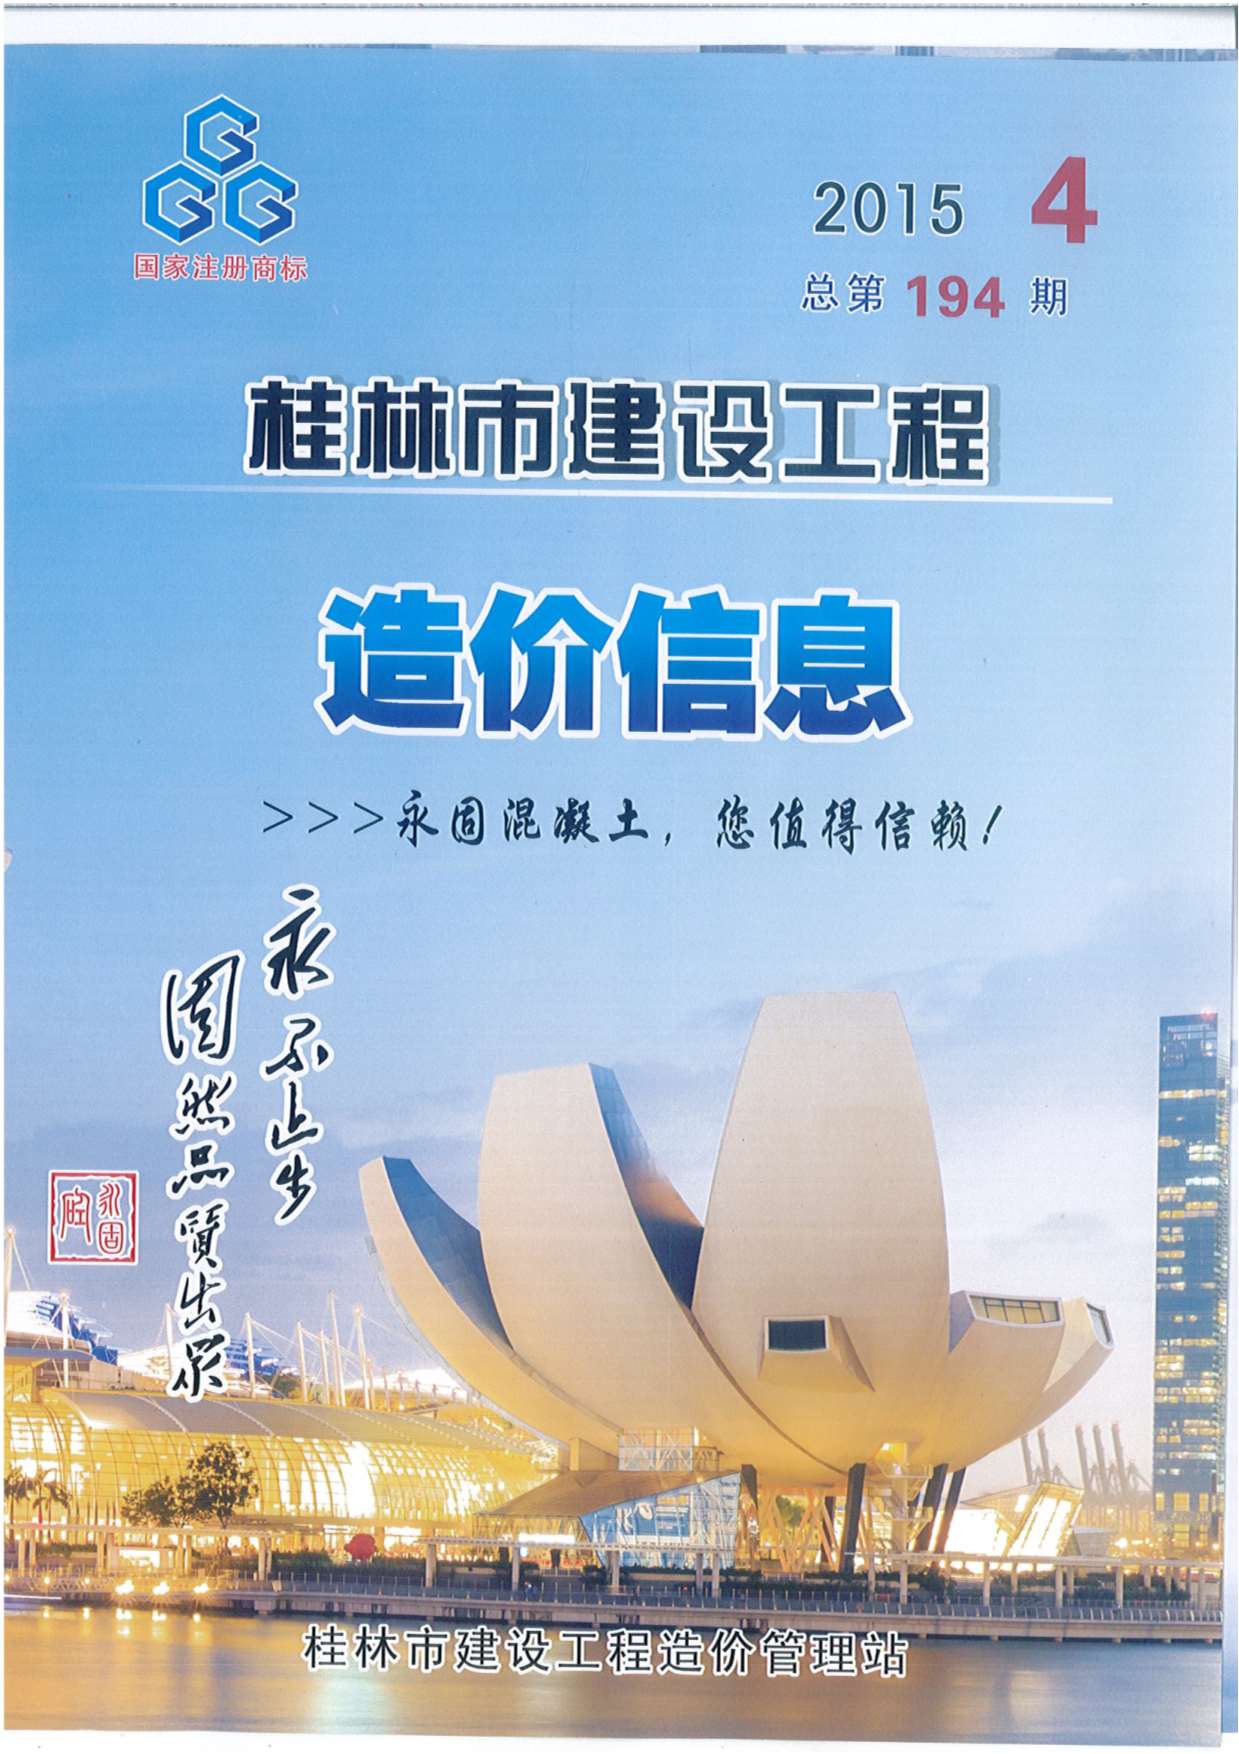 桂林市2015年4月建设工程造价信息